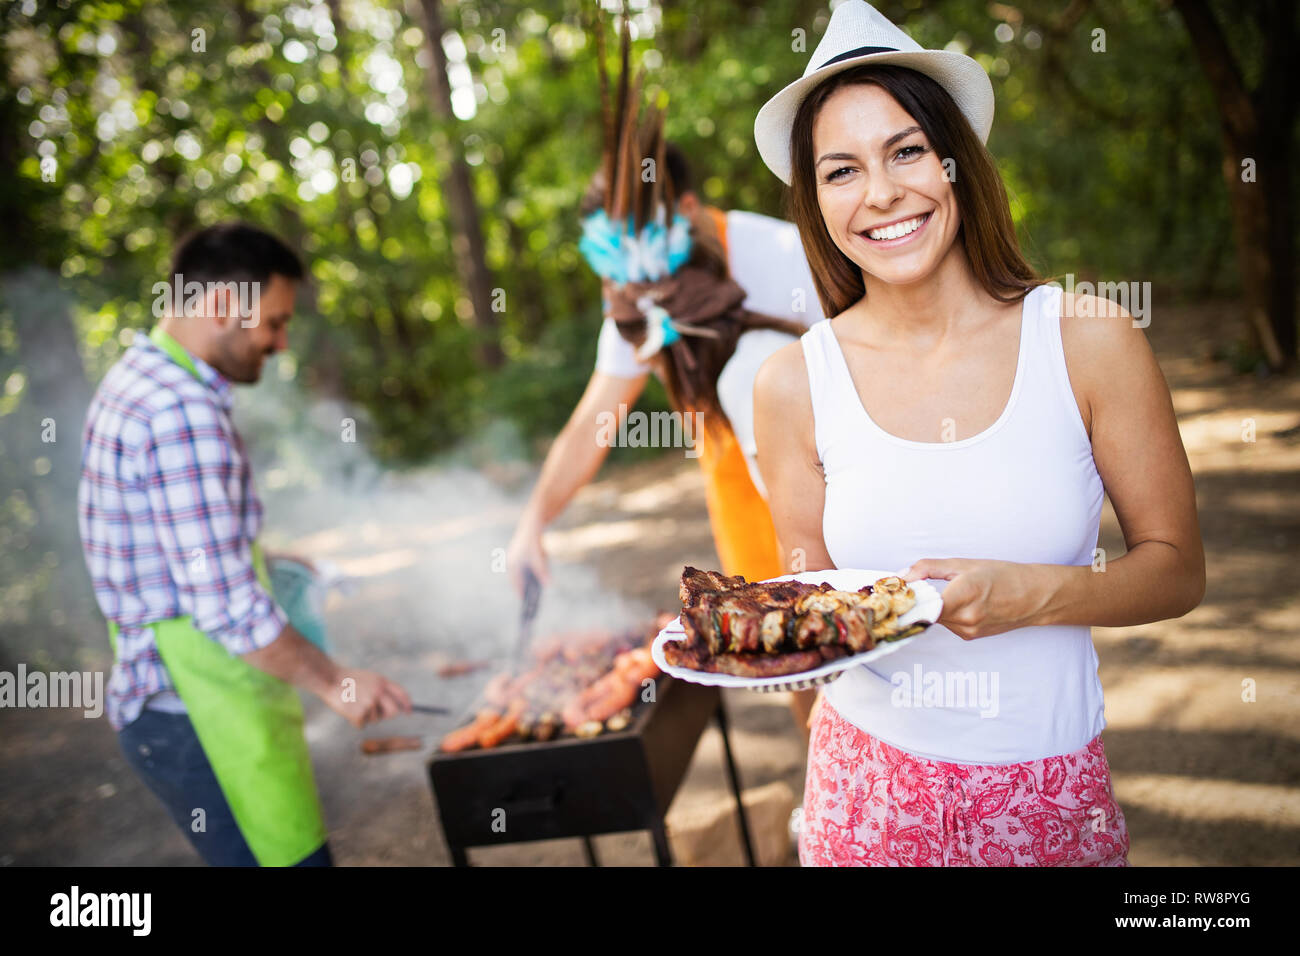 Amici fare barbecue e avente il pranzo nella natura Foto Stock